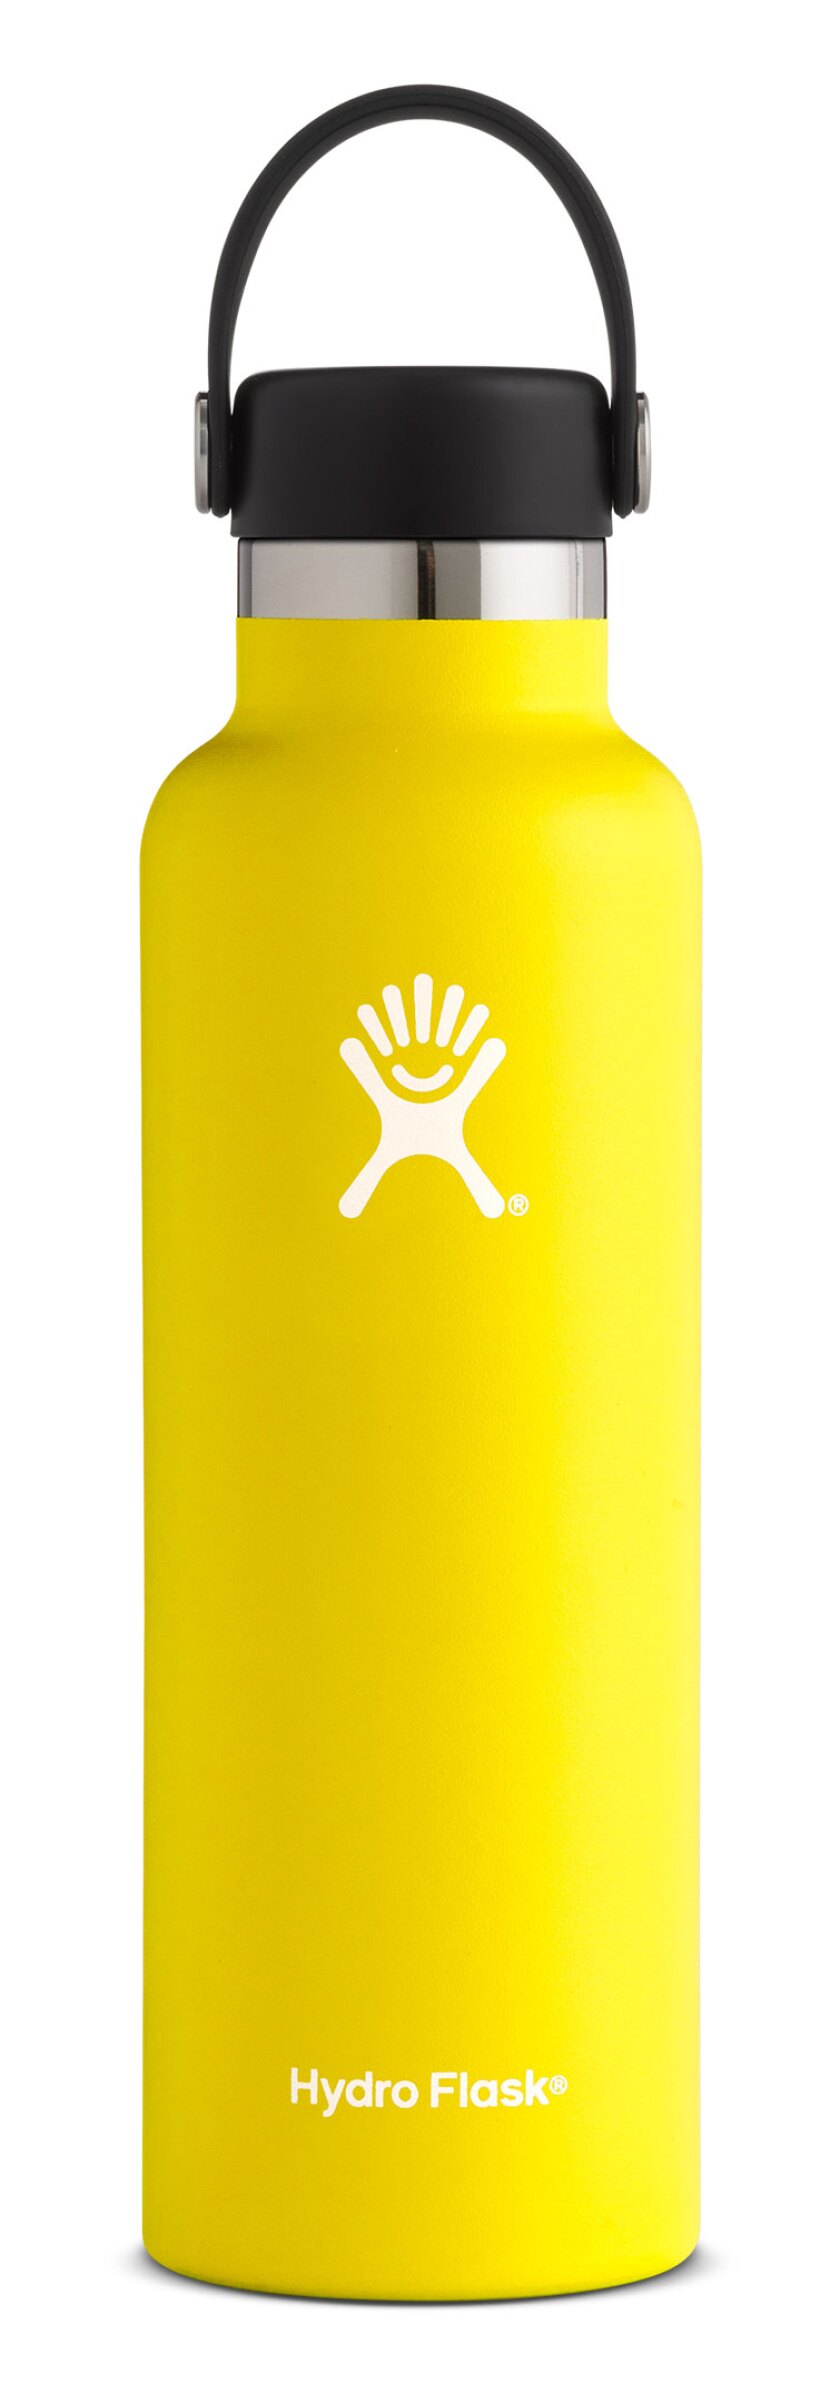 Hydro-Flask-21-oz-Standard-Mouth-Lemon